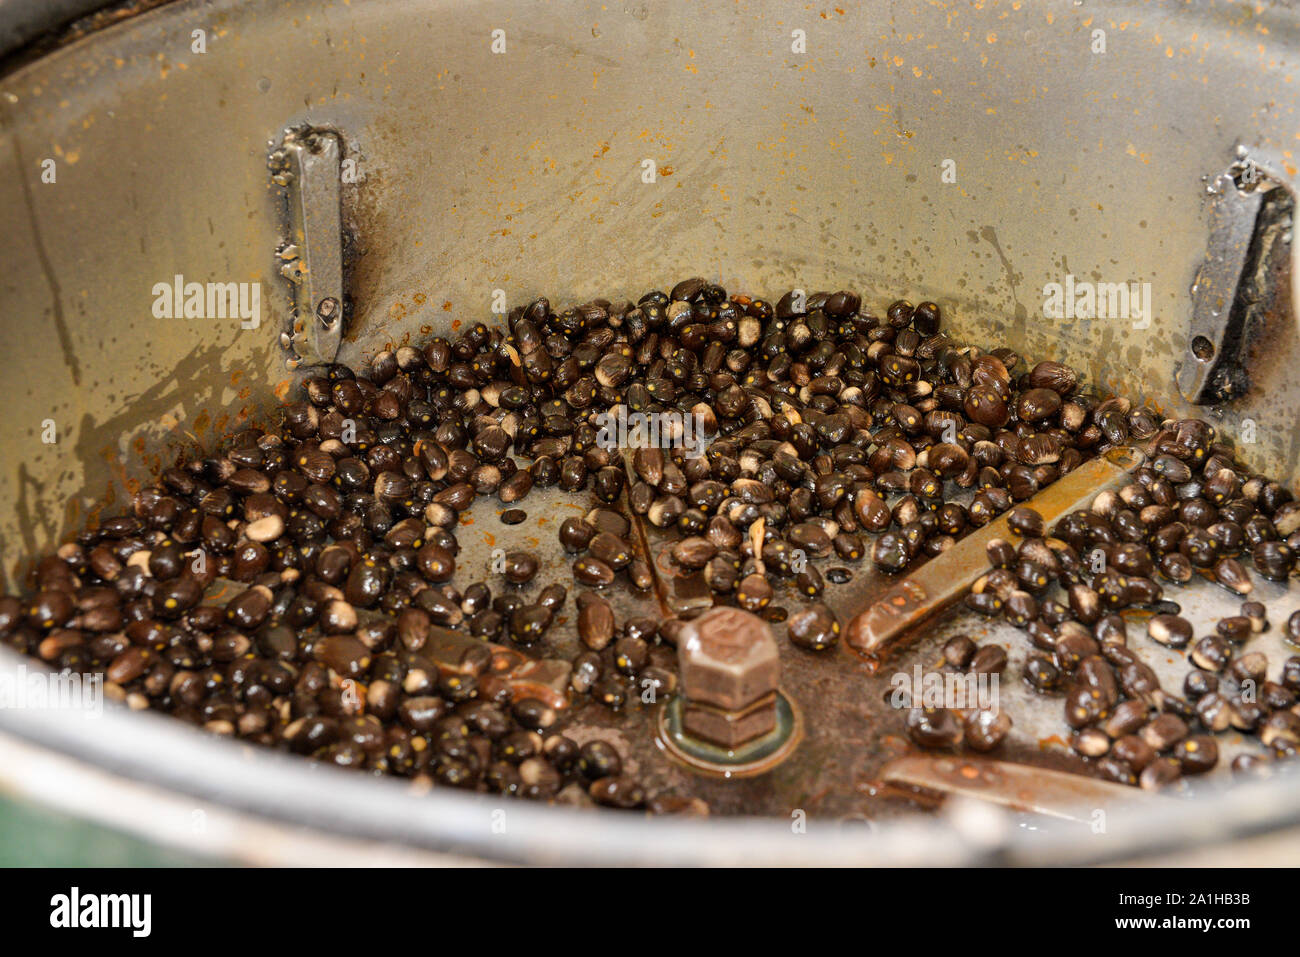 Oil palm nuts in a depulper machine after the depulper process complete. Stock Photo